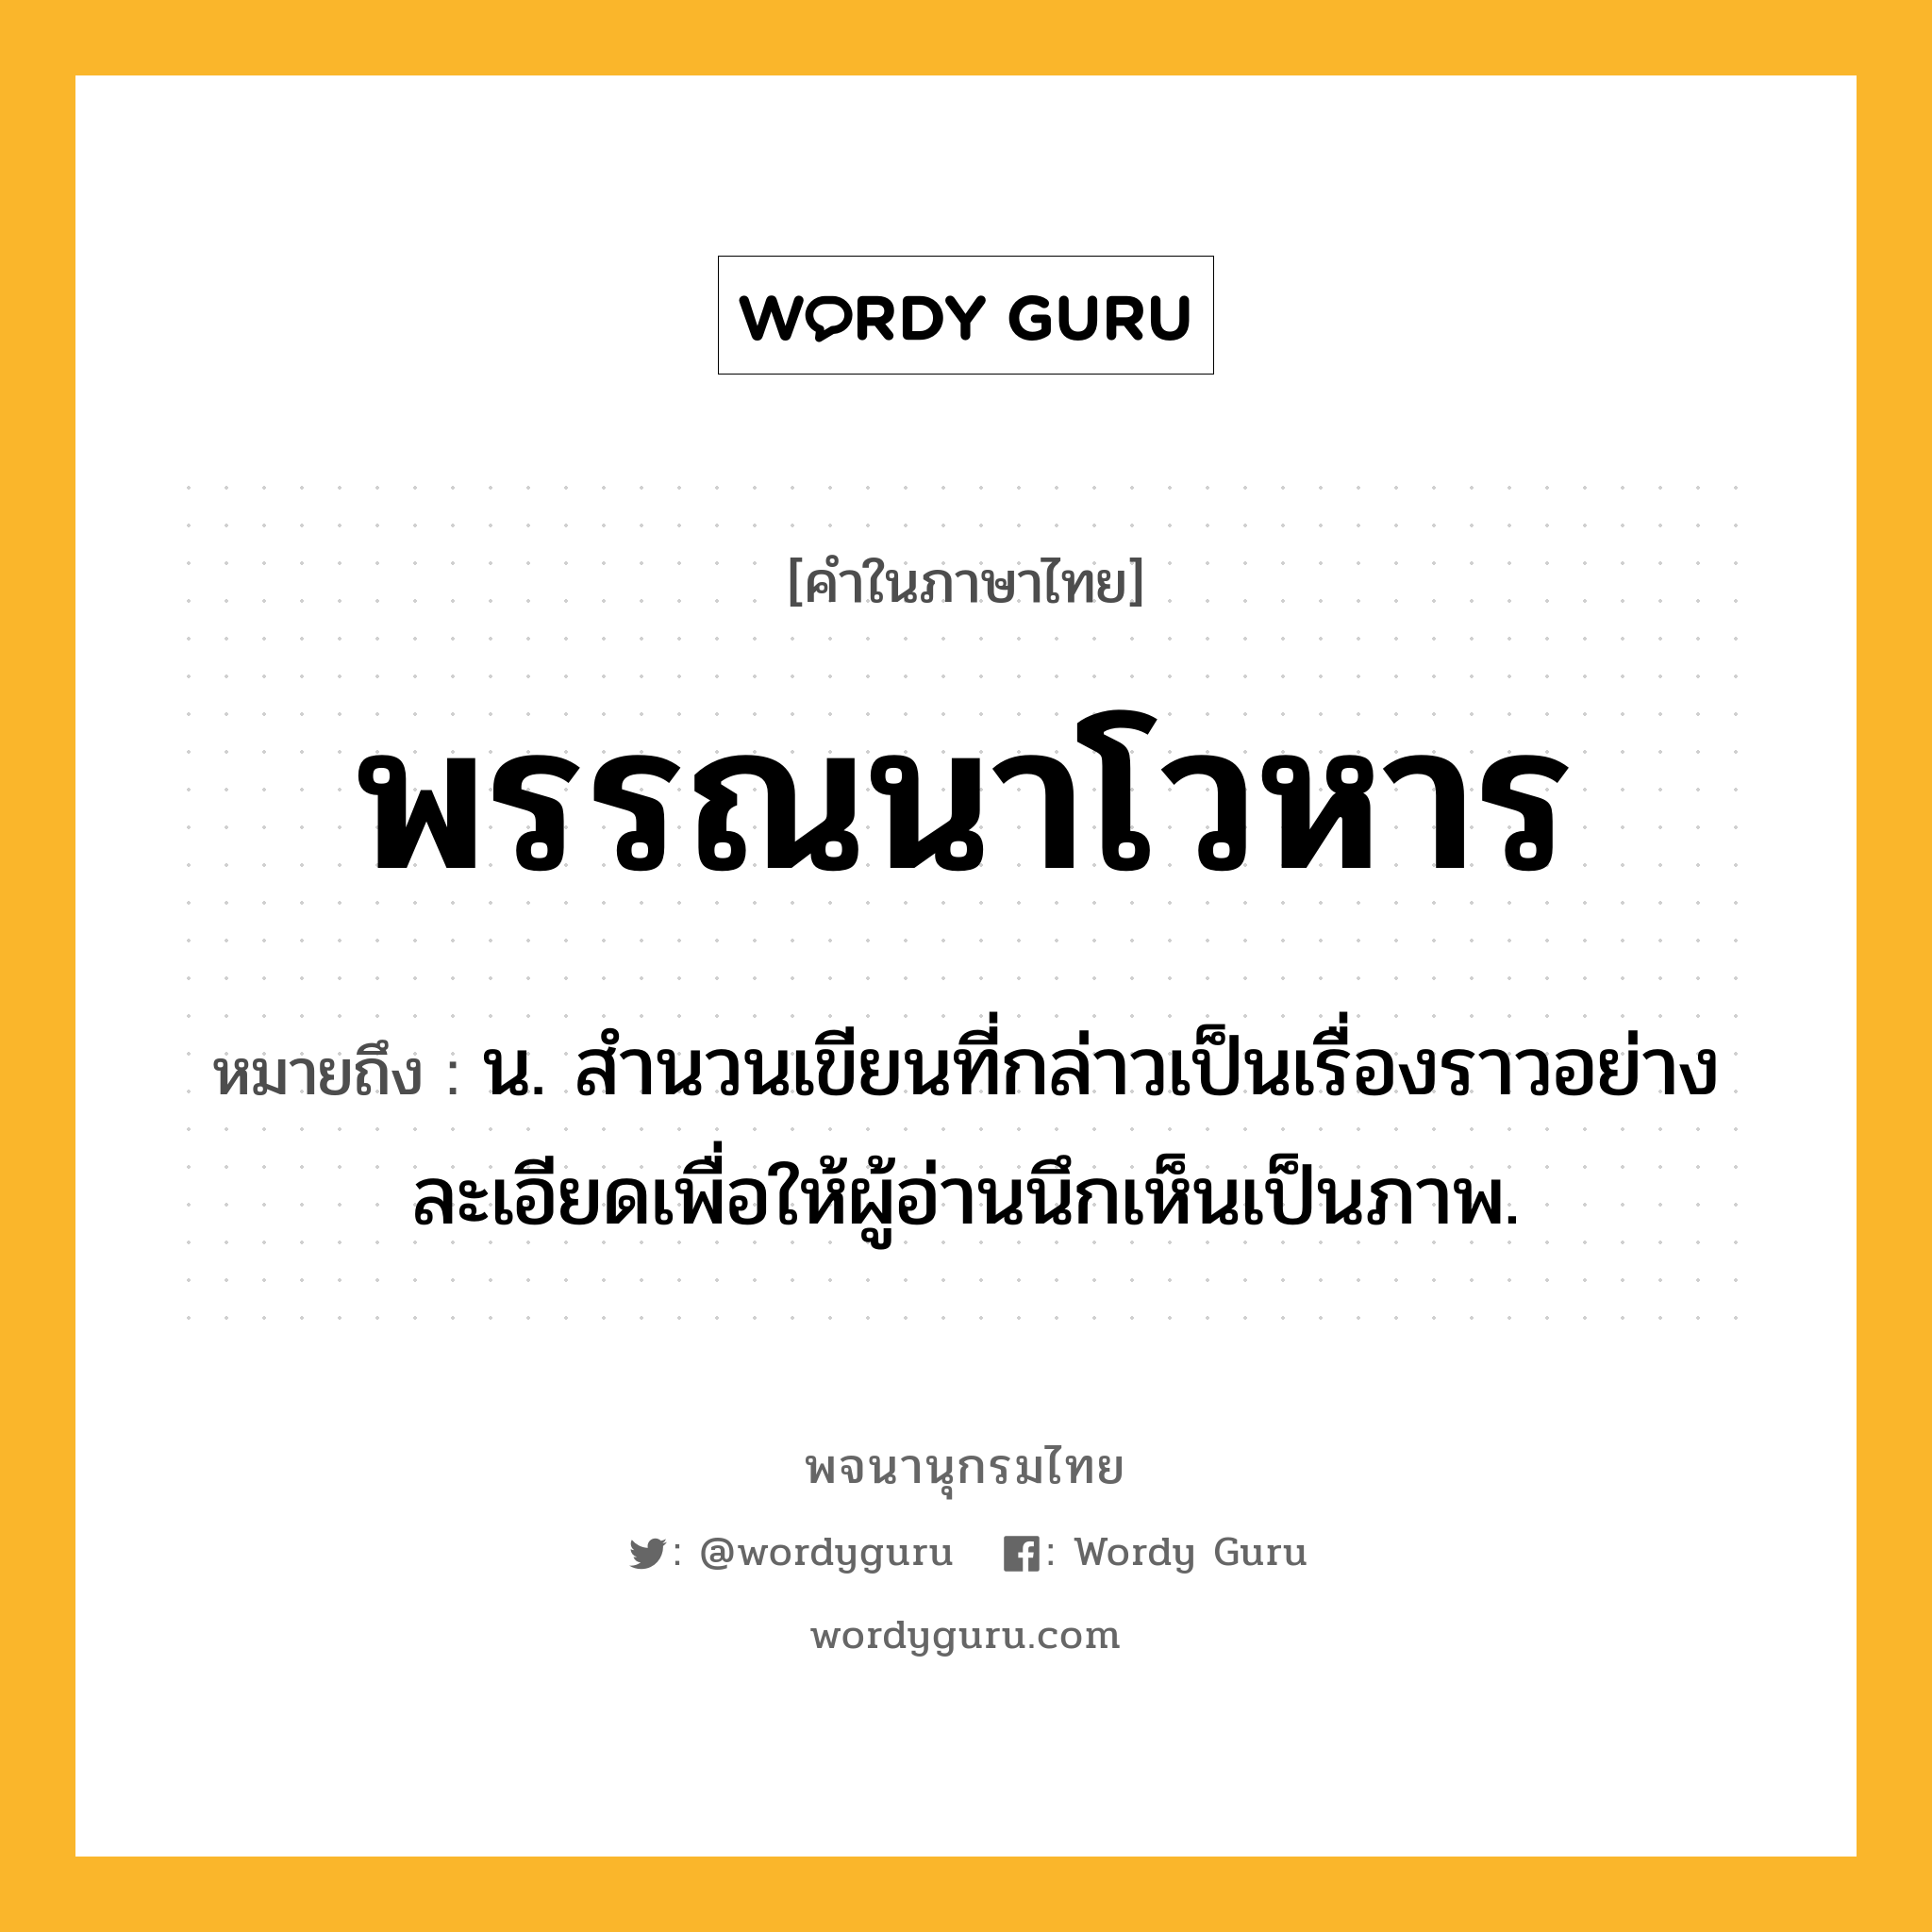 พรรณนาโวหาร หมายถึงอะไร?, คำในภาษาไทย พรรณนาโวหาร หมายถึง น. สำนวนเขียนที่กล่าวเป็นเรื่องราวอย่างละเอียดเพื่อให้ผู้อ่านนึกเห็นเป็นภาพ.